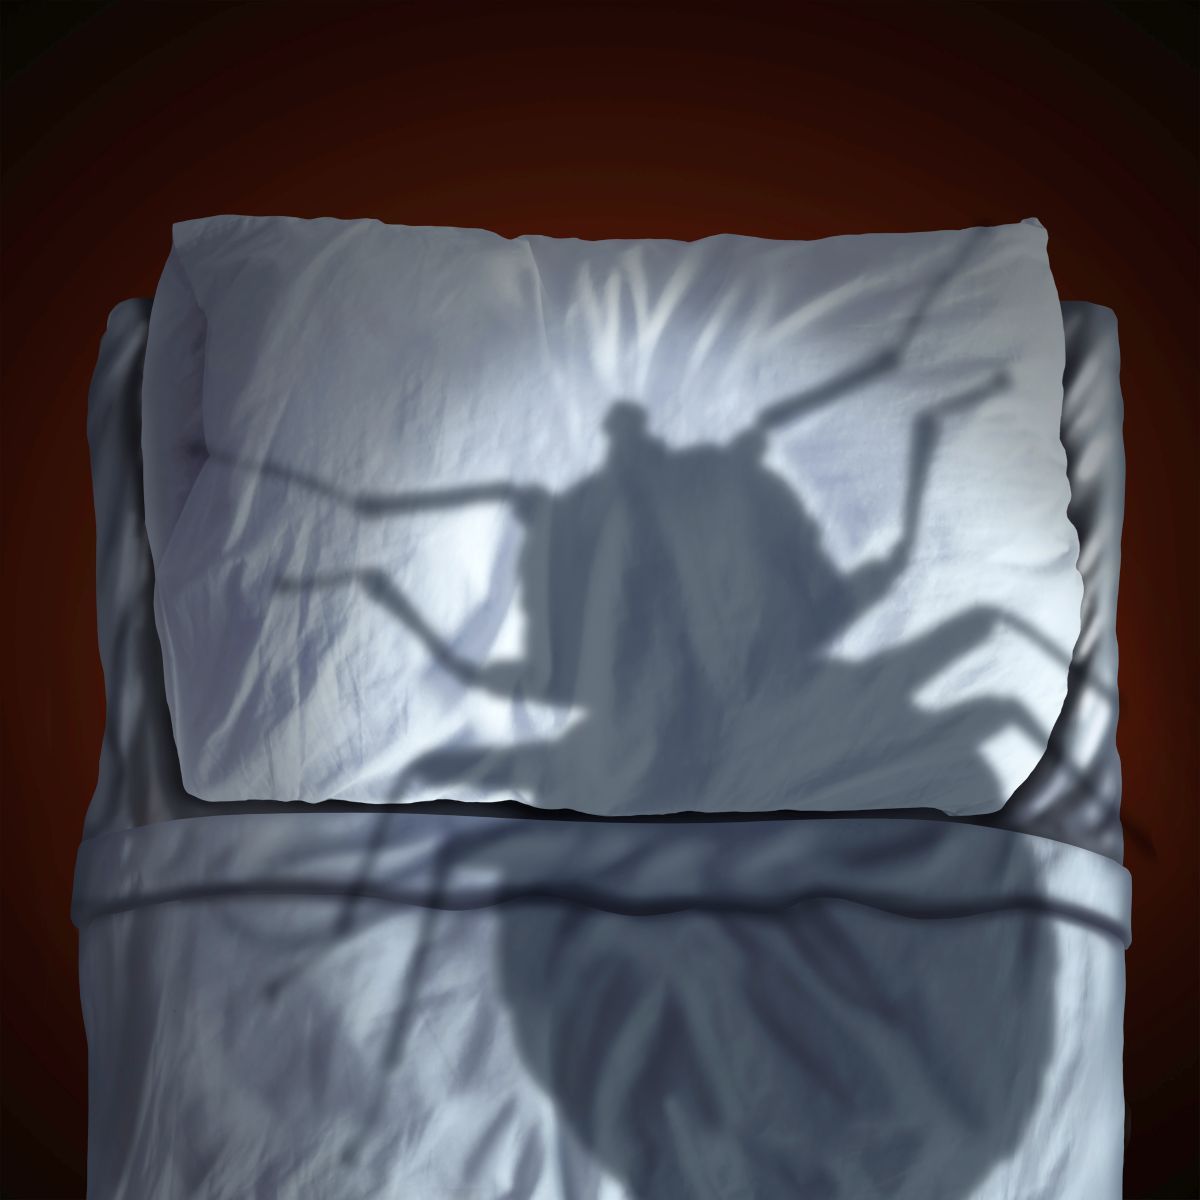 les punaises de lit : un cauchemar